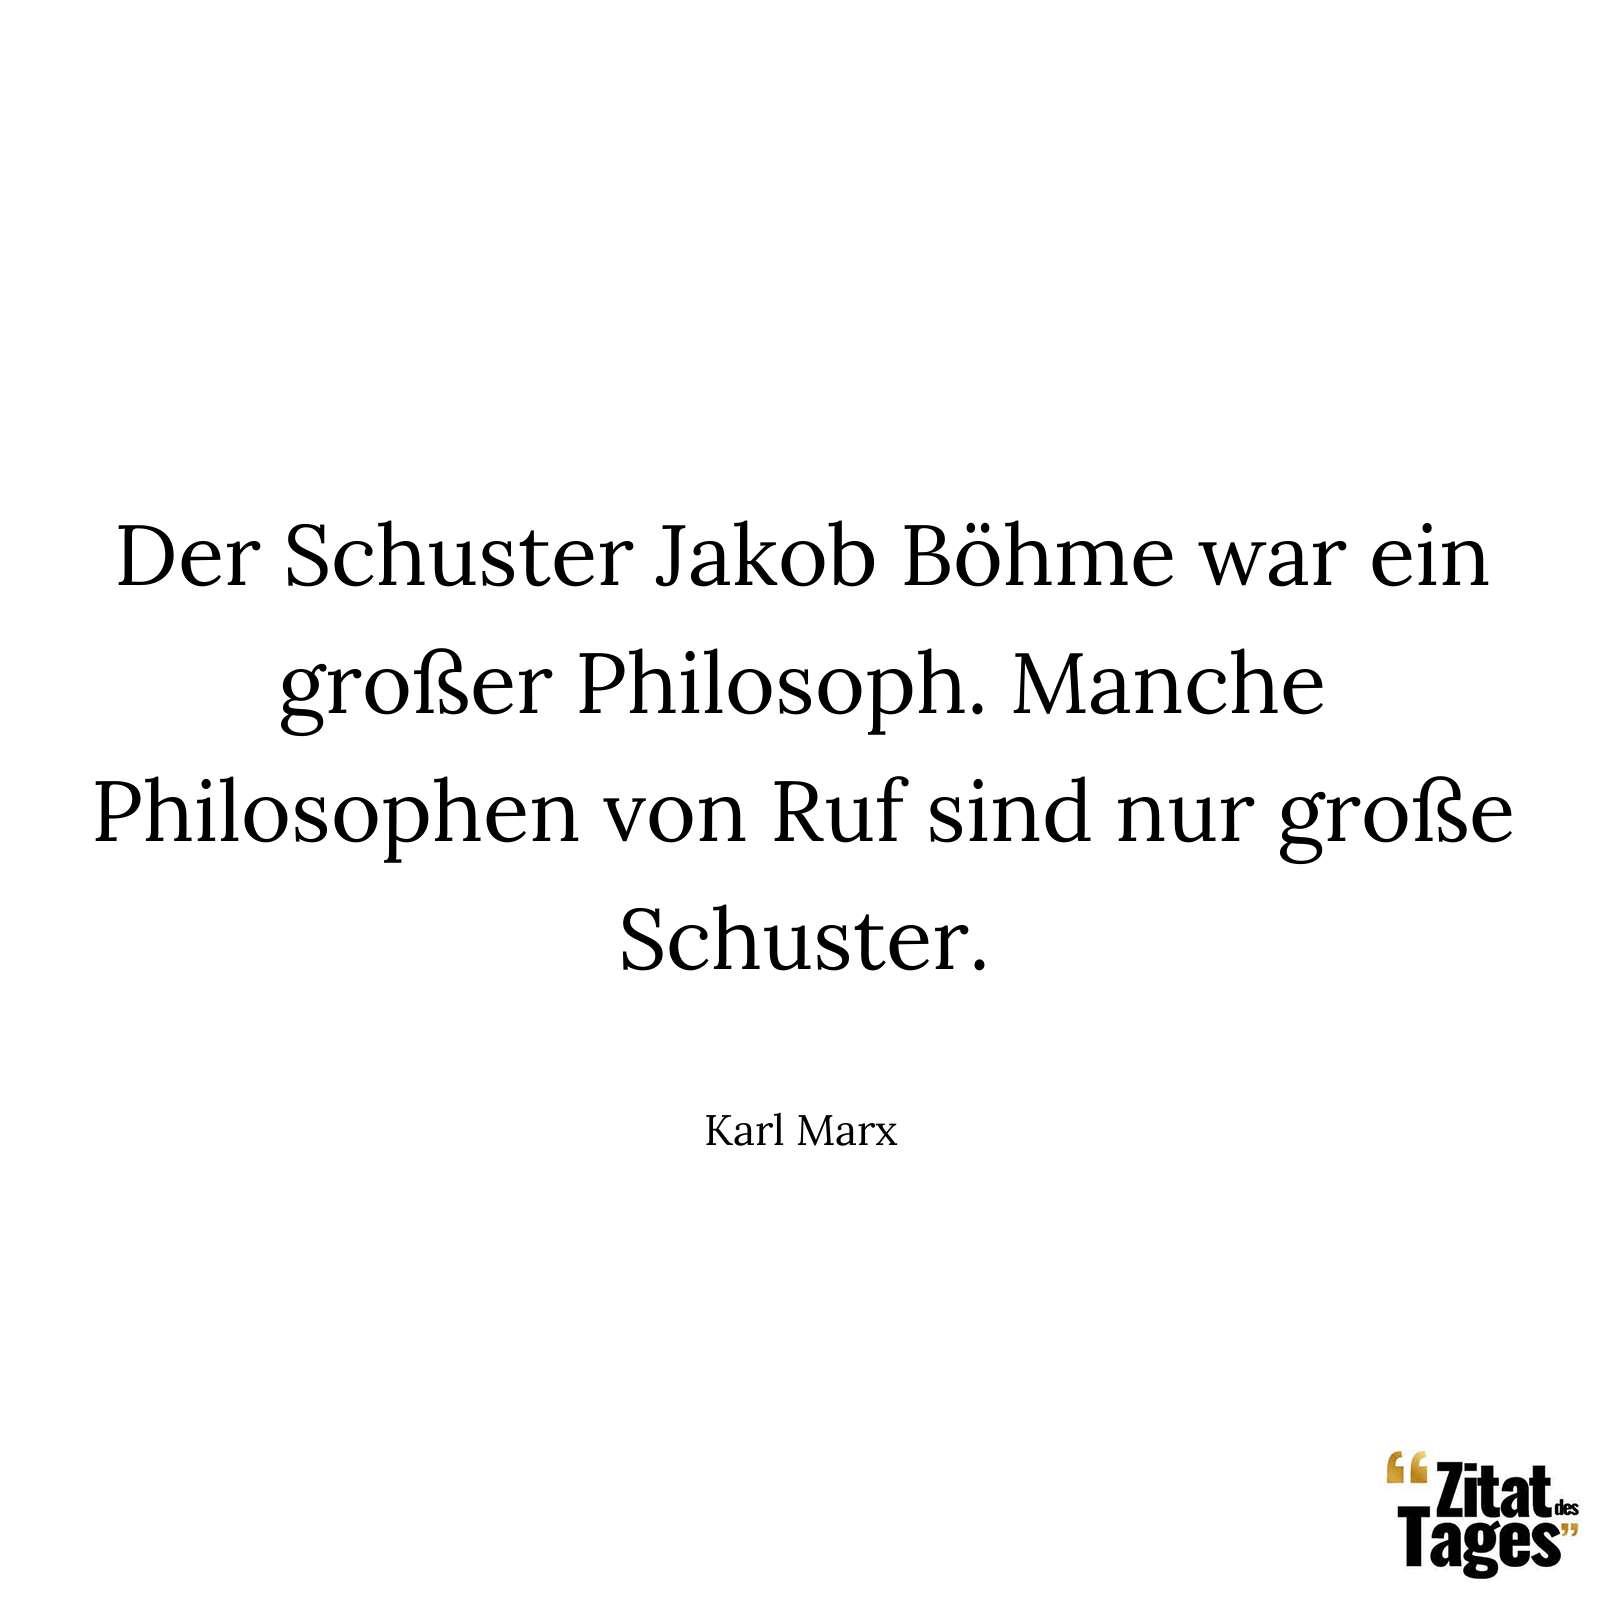 Der Schuster Jakob Böhme war ein großer Philosoph. Manche Philosophen von Ruf sind nur große Schuster. - Karl Marx